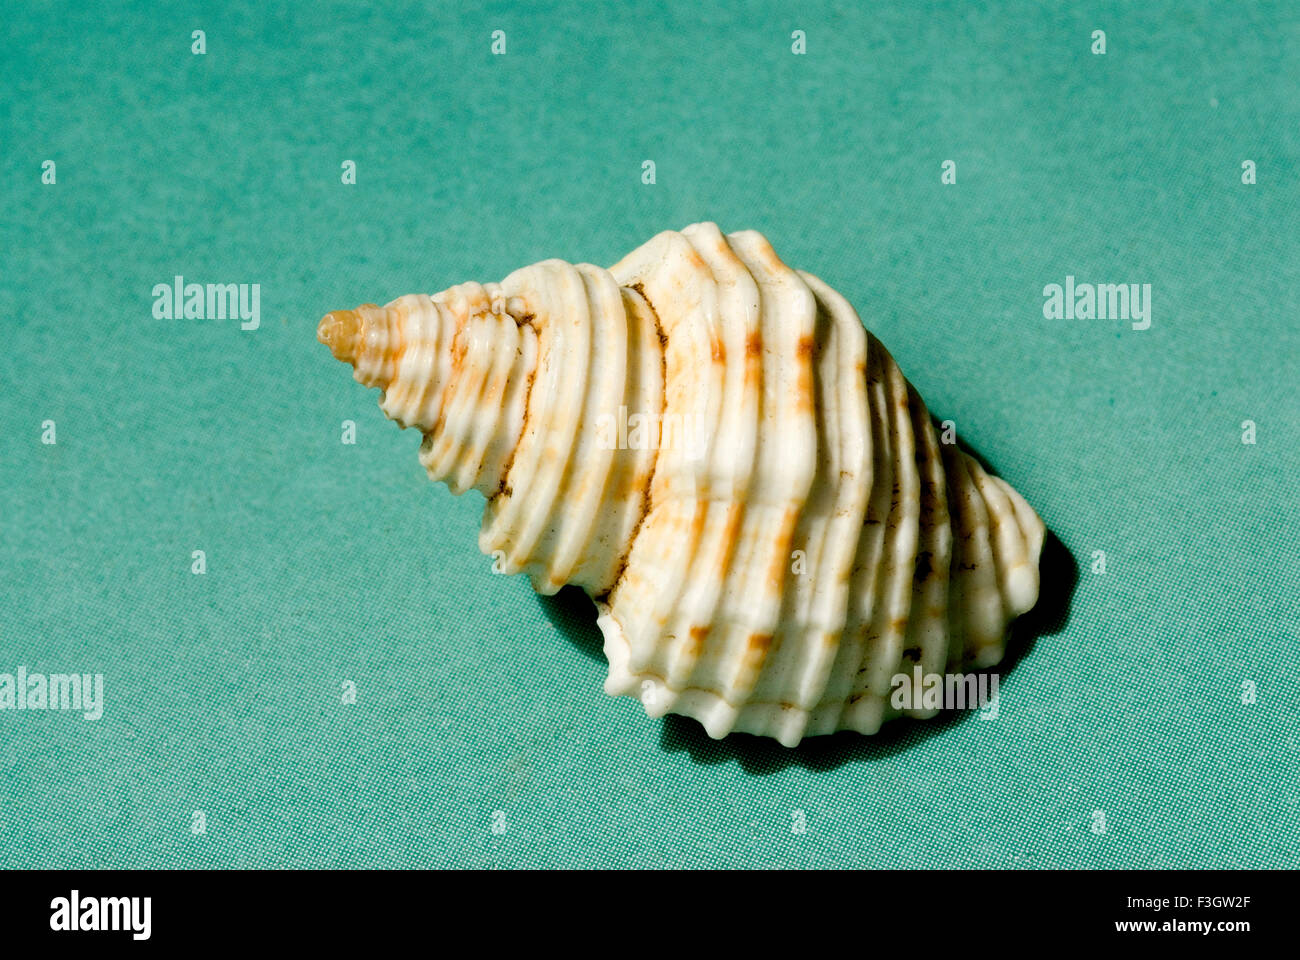 shell, shells, seashell, seashells, sea shell, sea shells Stock Photo